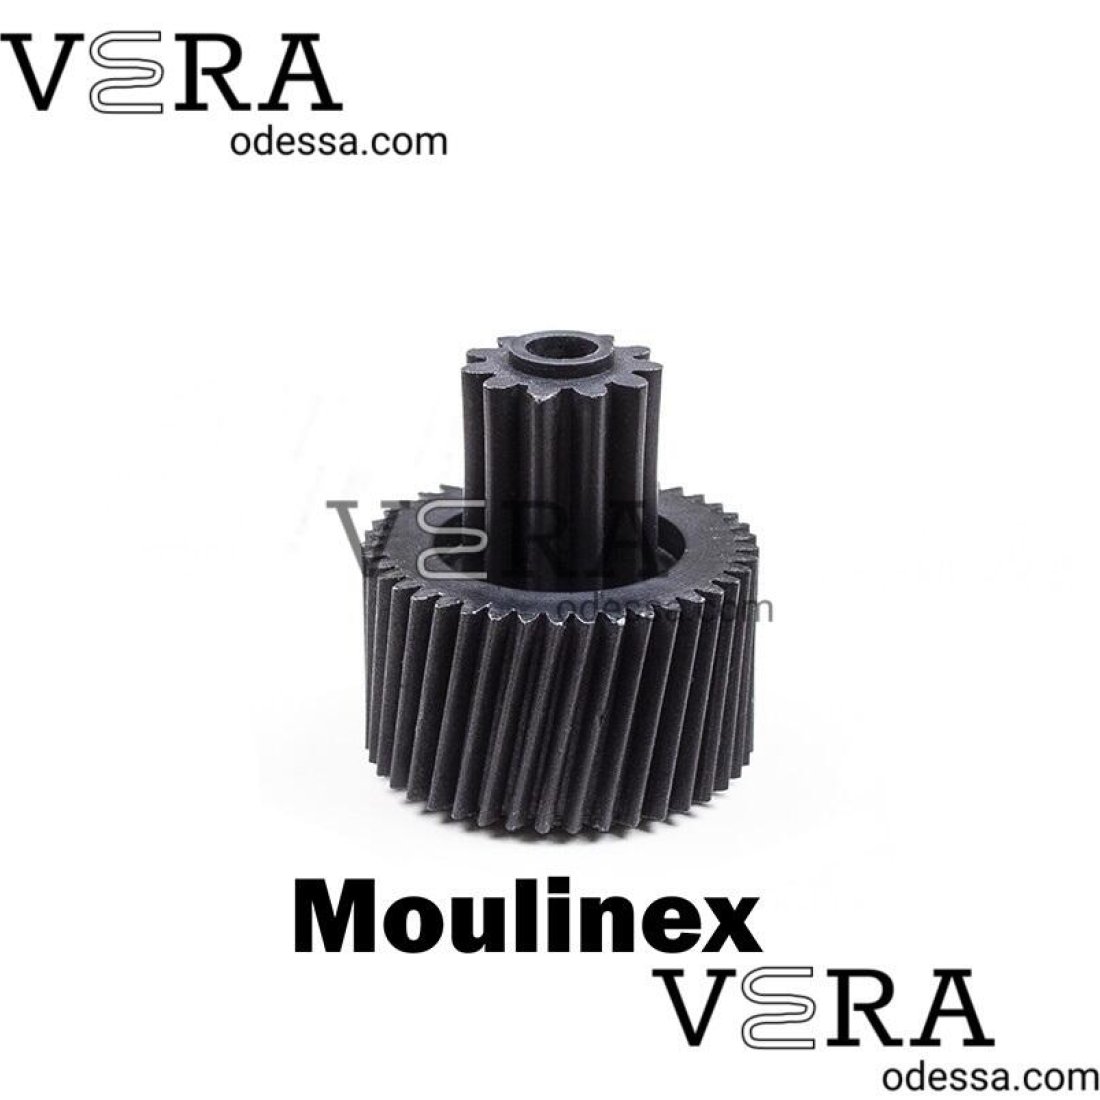 Купити шестерню для м'ясорубки Moulinex hv8 2000w оптом, фотографія 1